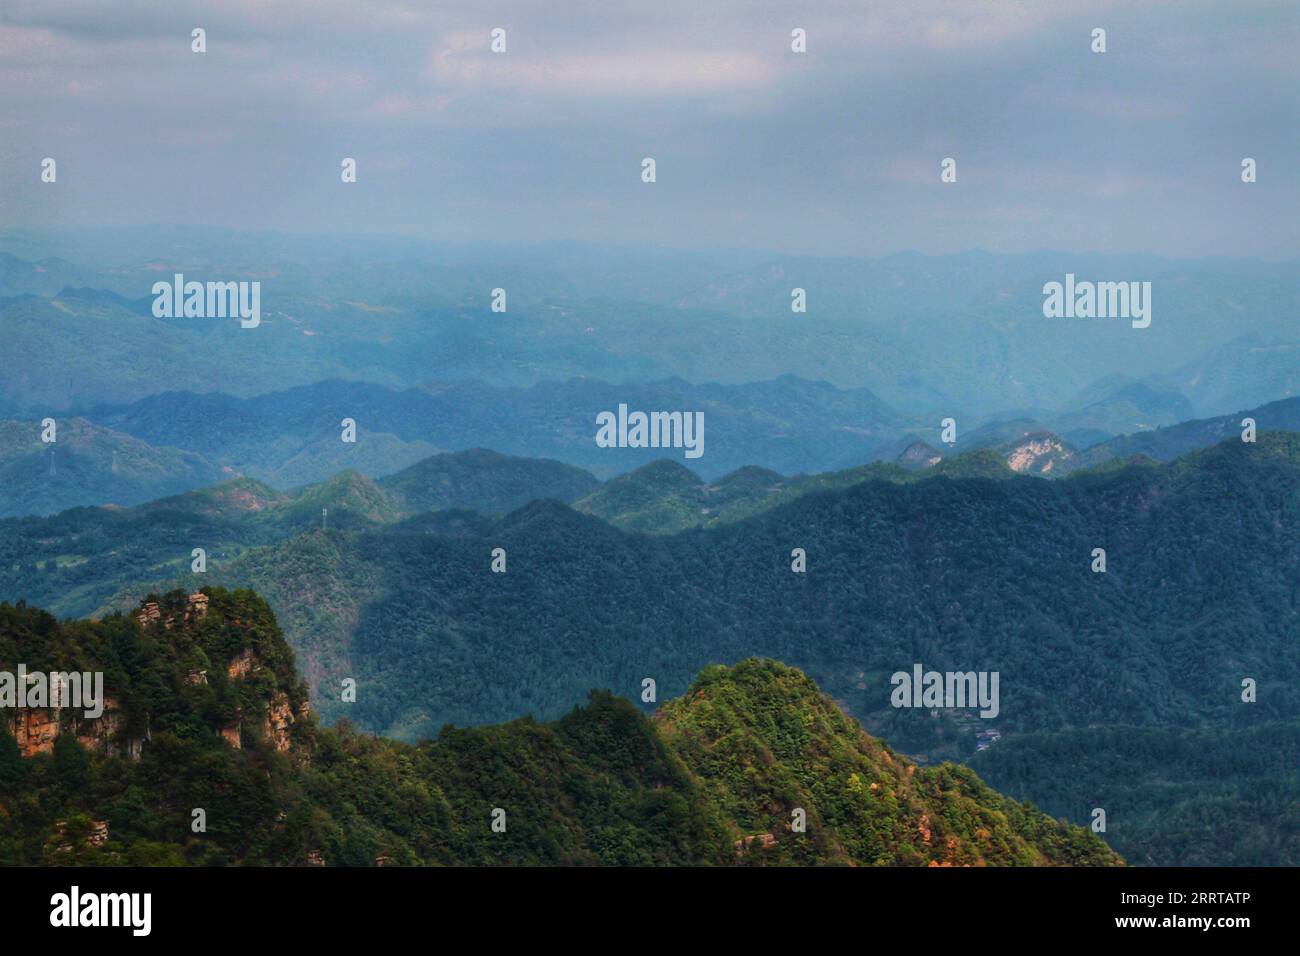 Halten Sie die atemberaubende Essenz von Chinas berühmten scharfen, hoch aufragenden Bergen fest, die an die beeindruckenden Landschaften aus dem Avatar-Film erinnern. Stockfoto